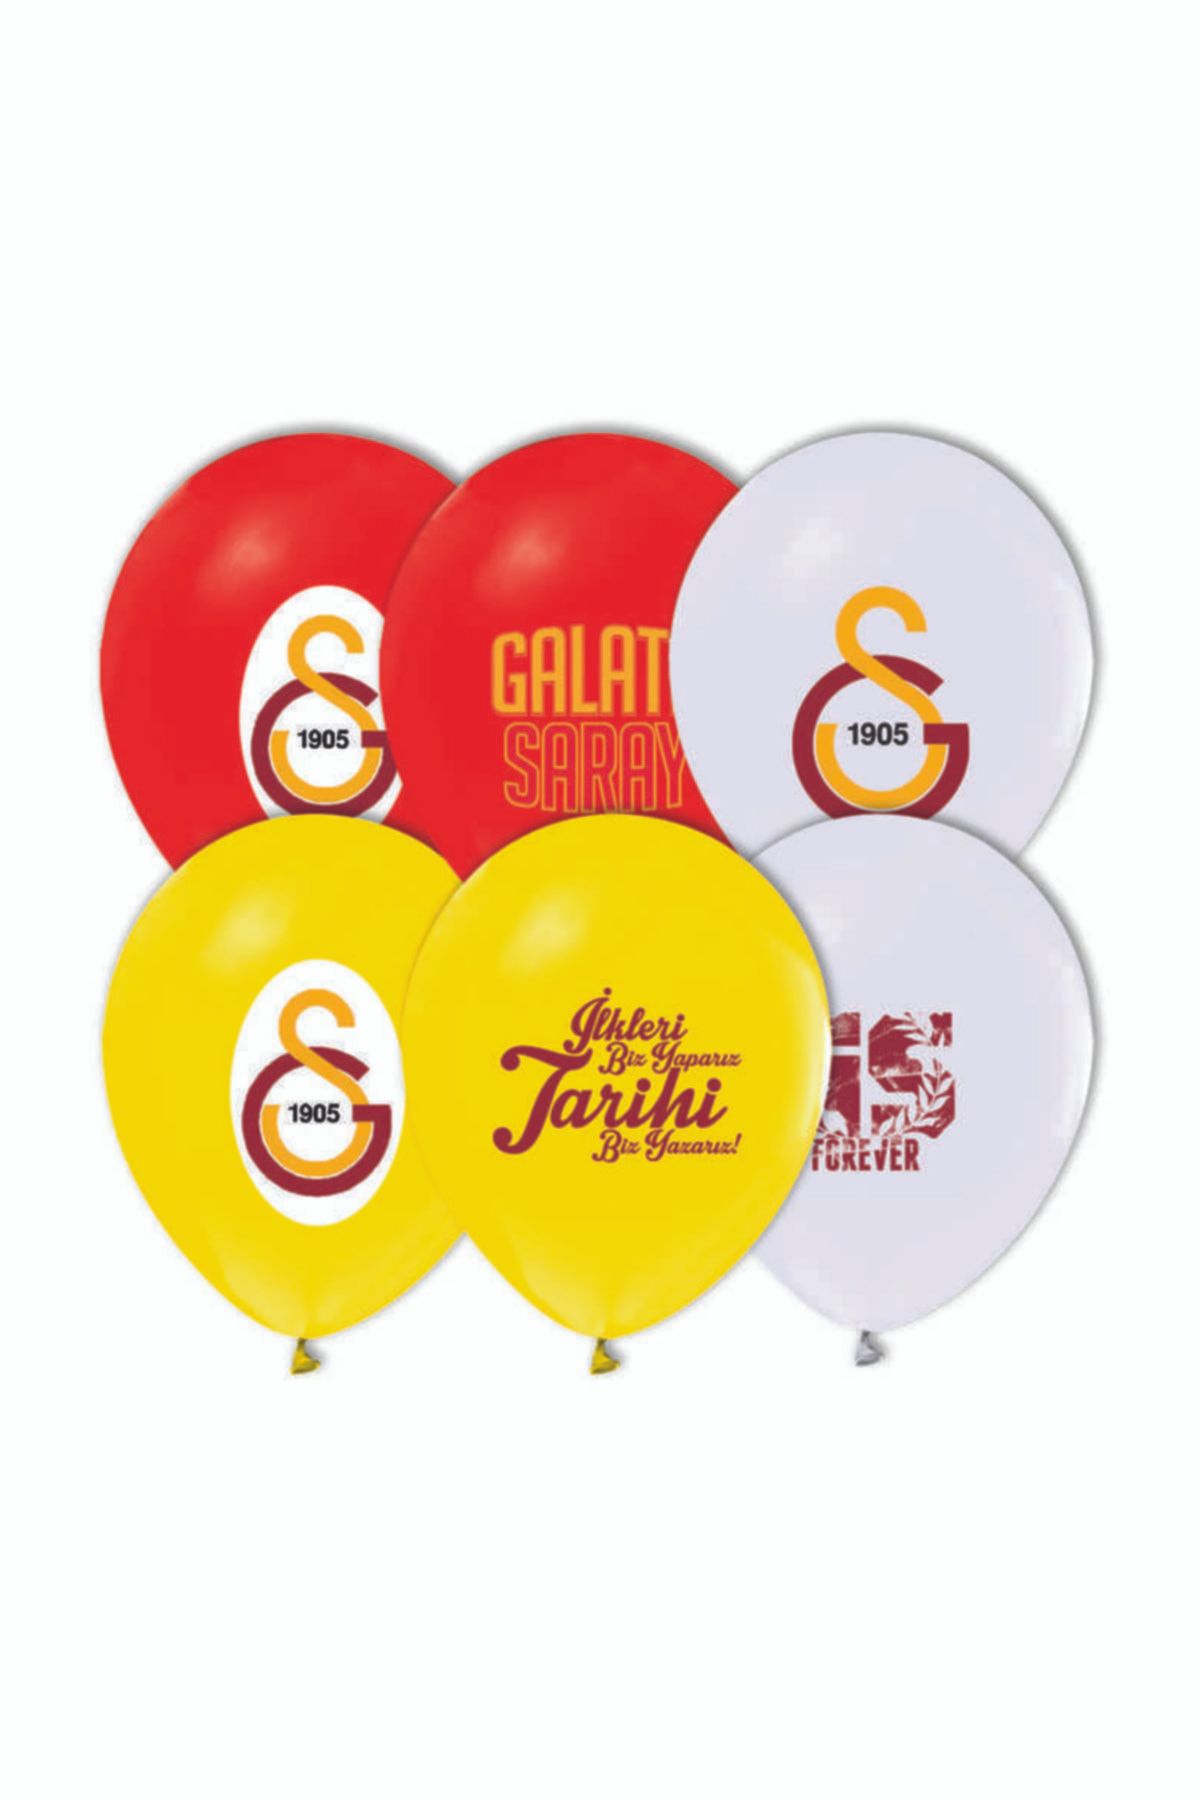 kidspartim Galatasaray Baskılı Pastel Renkli Balon